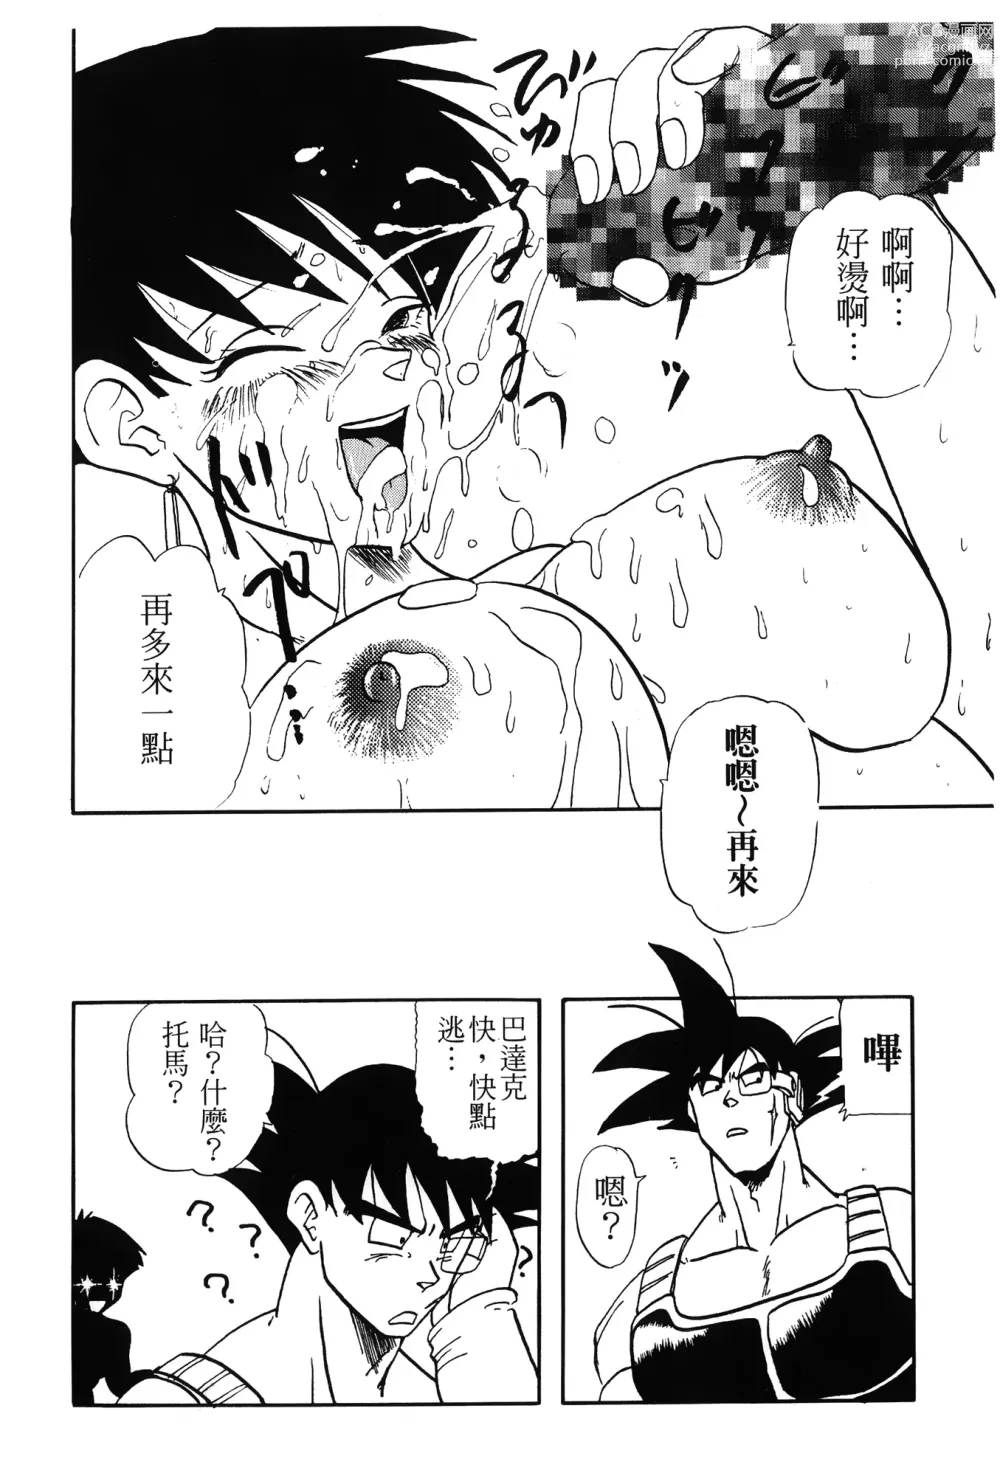 Page 144 of doujinshi ドラゴンパール 01